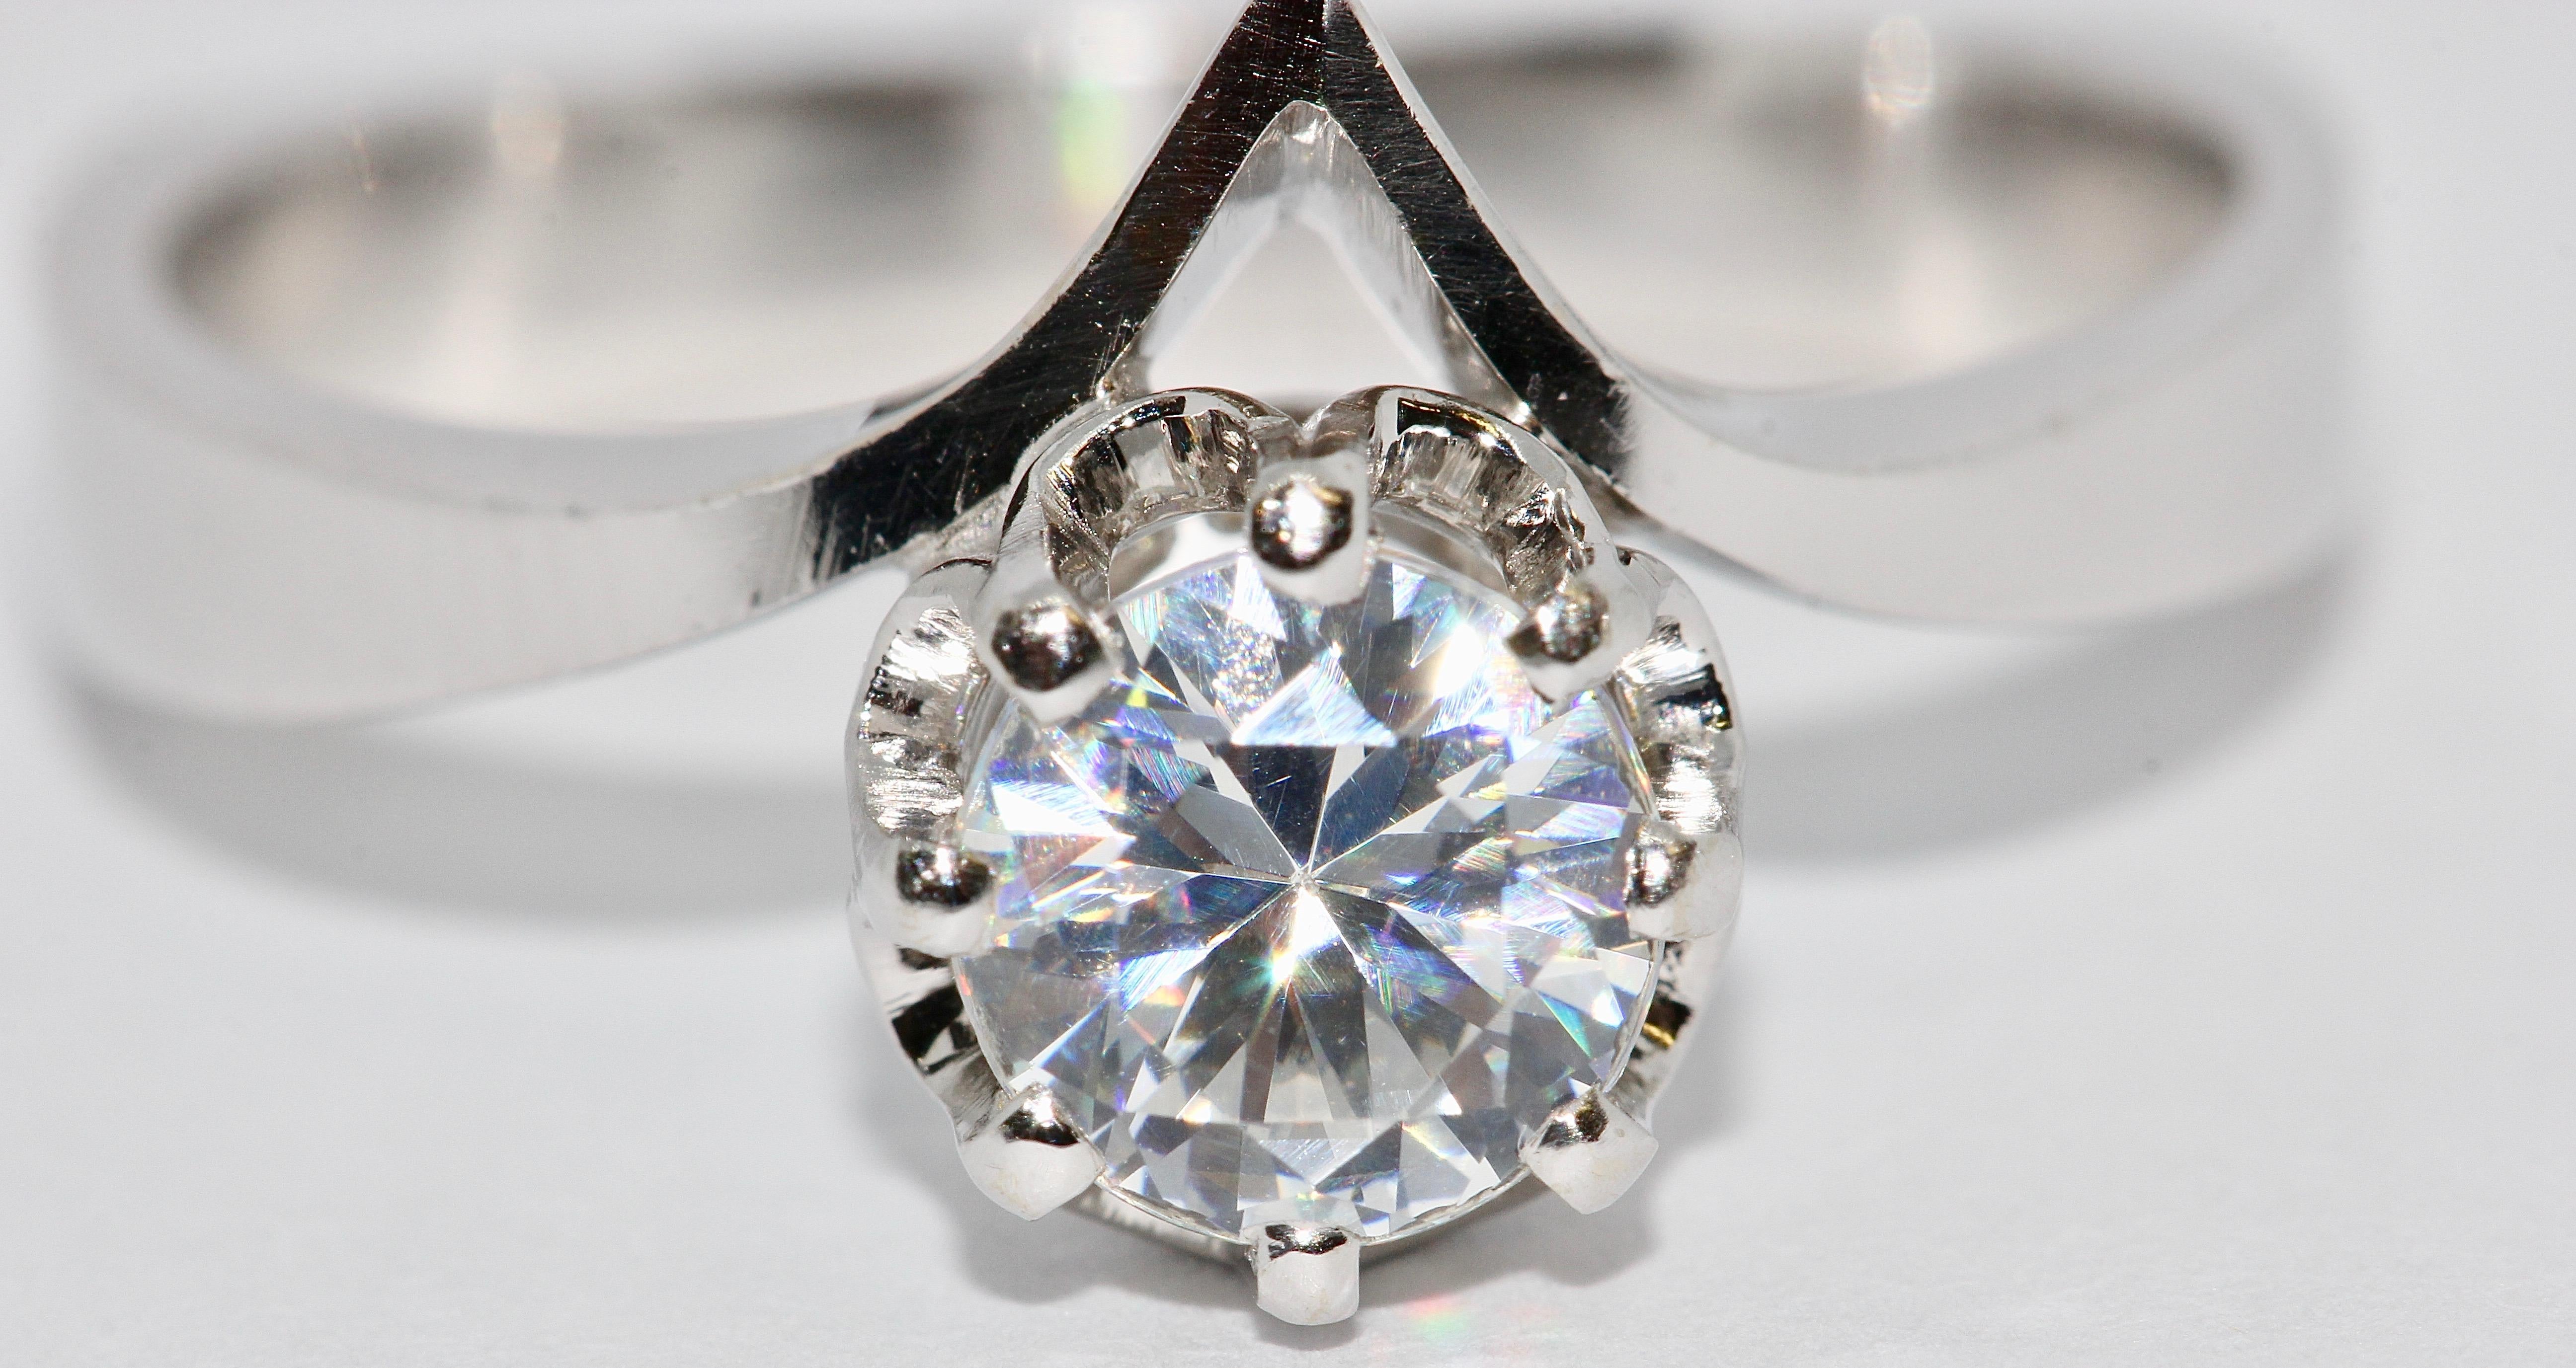 La taille de l'anneau peut être ajustée par nos soins à la taille souhaitée.

Certificat d'authenticité inclus.